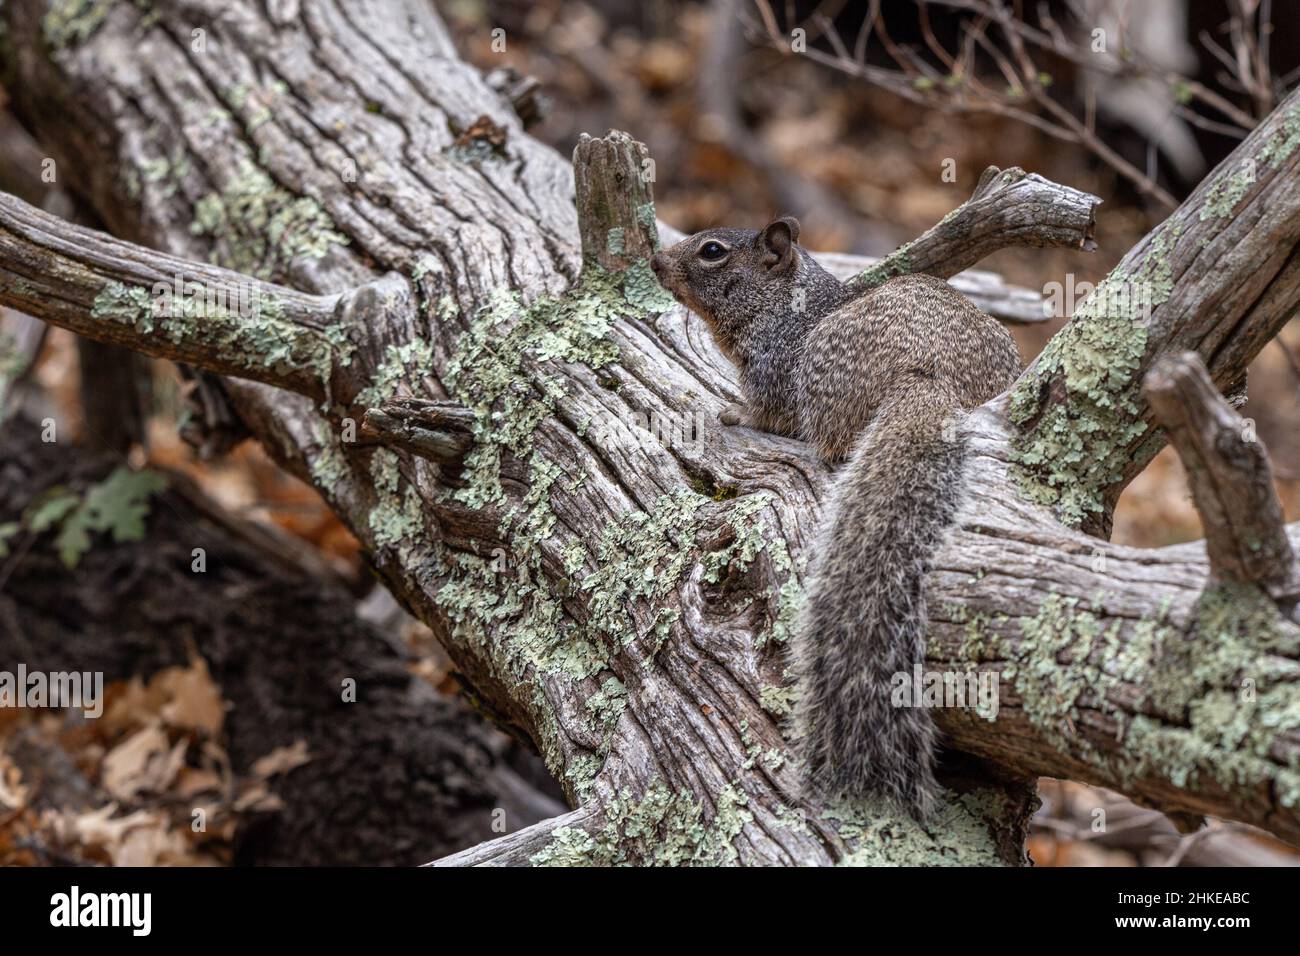 Les écureuils rocheux sont de grands écureuils de sol à queue brousse qui se trouvent dans des zones rocheuses telles que les pentes de talus et les amas de rochers. Banque D'Images